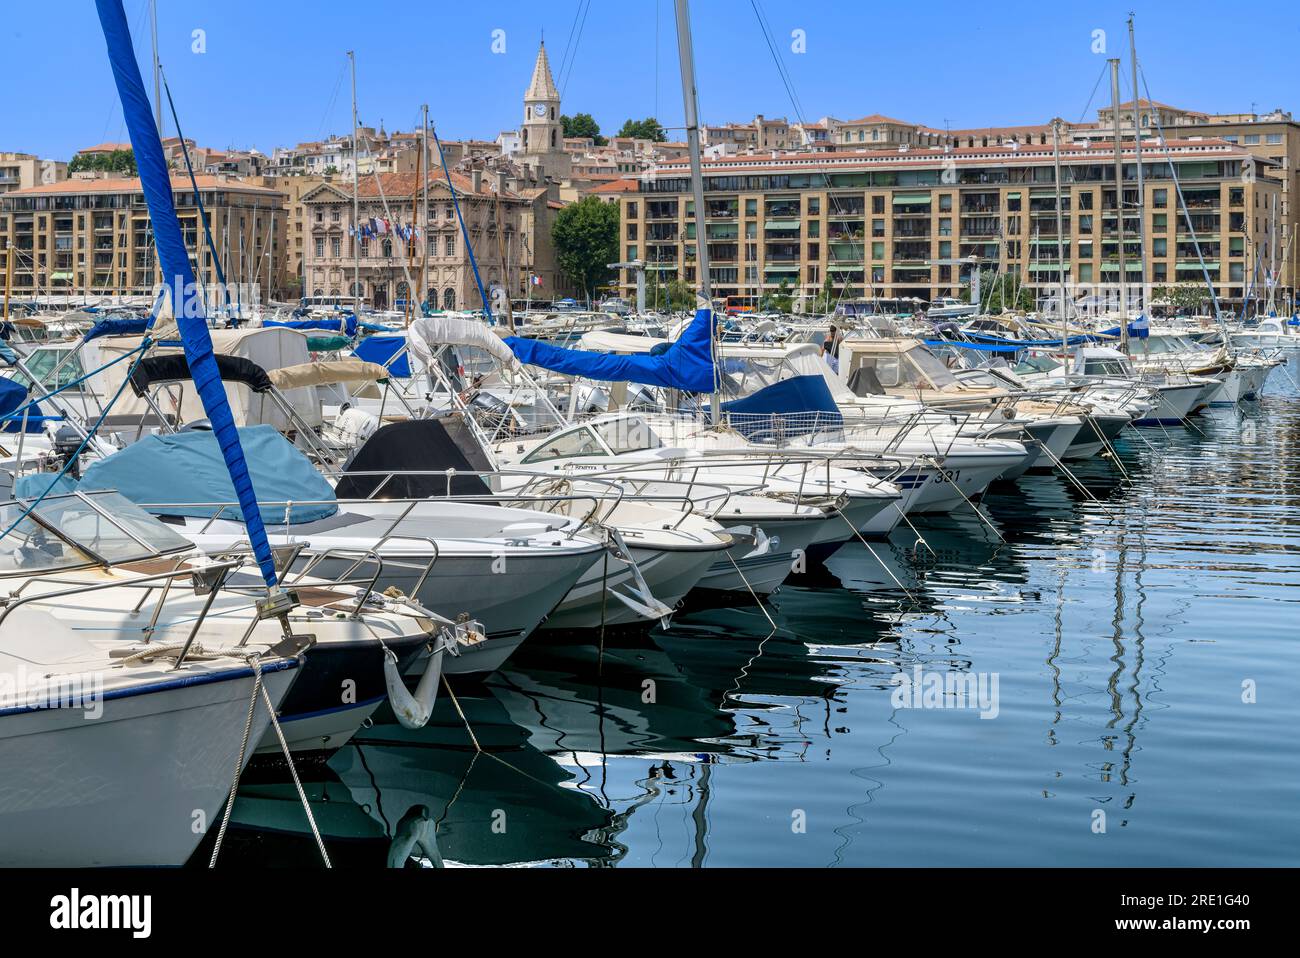 Le Vieux Port de Marseille, (Vieux Port de Marseille). Une attraction touristique populaire à Marseille, avec des rangées de yachts, bateaux rapides et bateaux. Banque D'Images